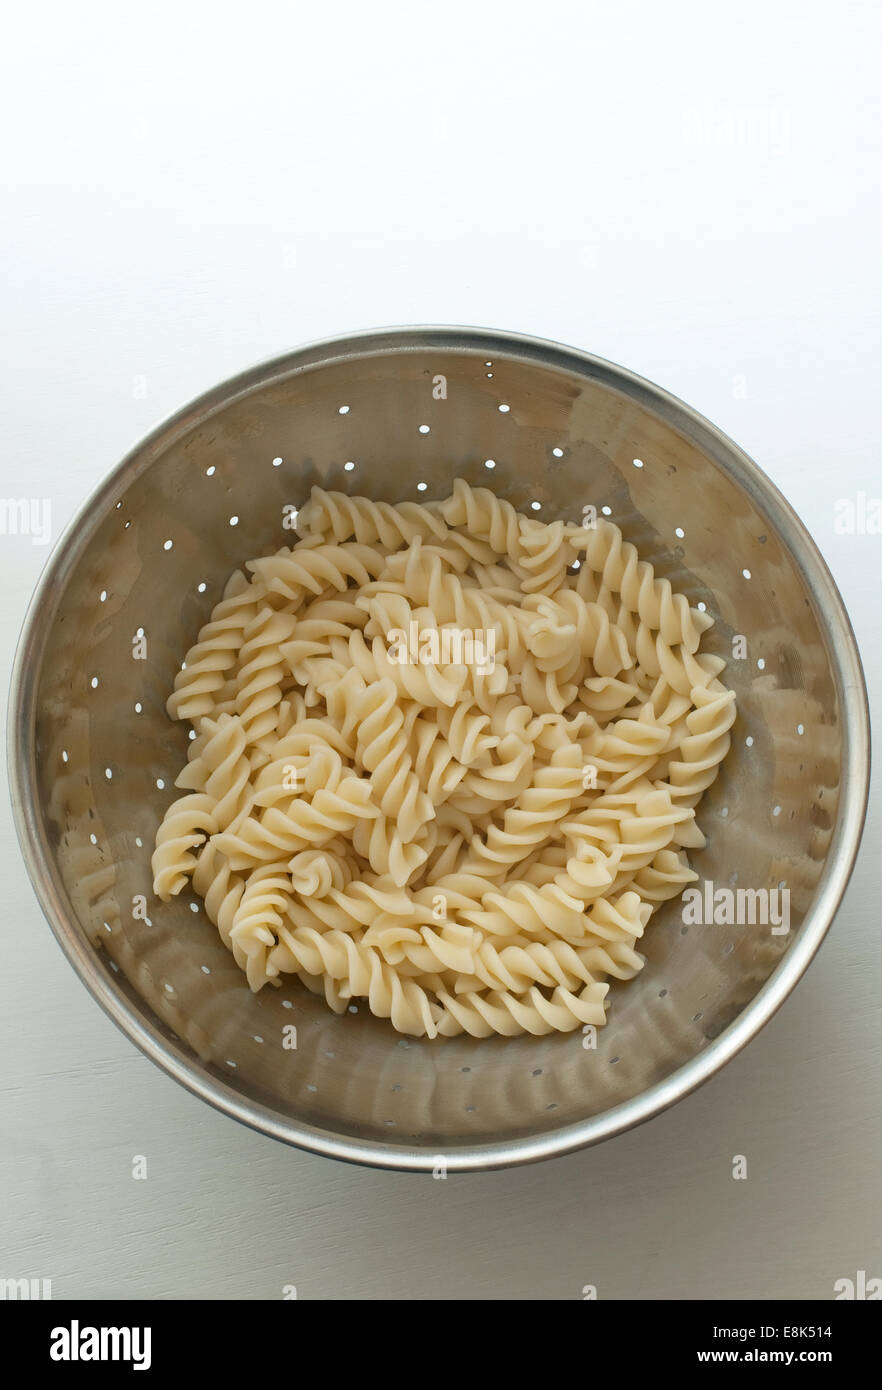 Still Life food immagine della pasta cotta in uno scolapasta Foto Stock